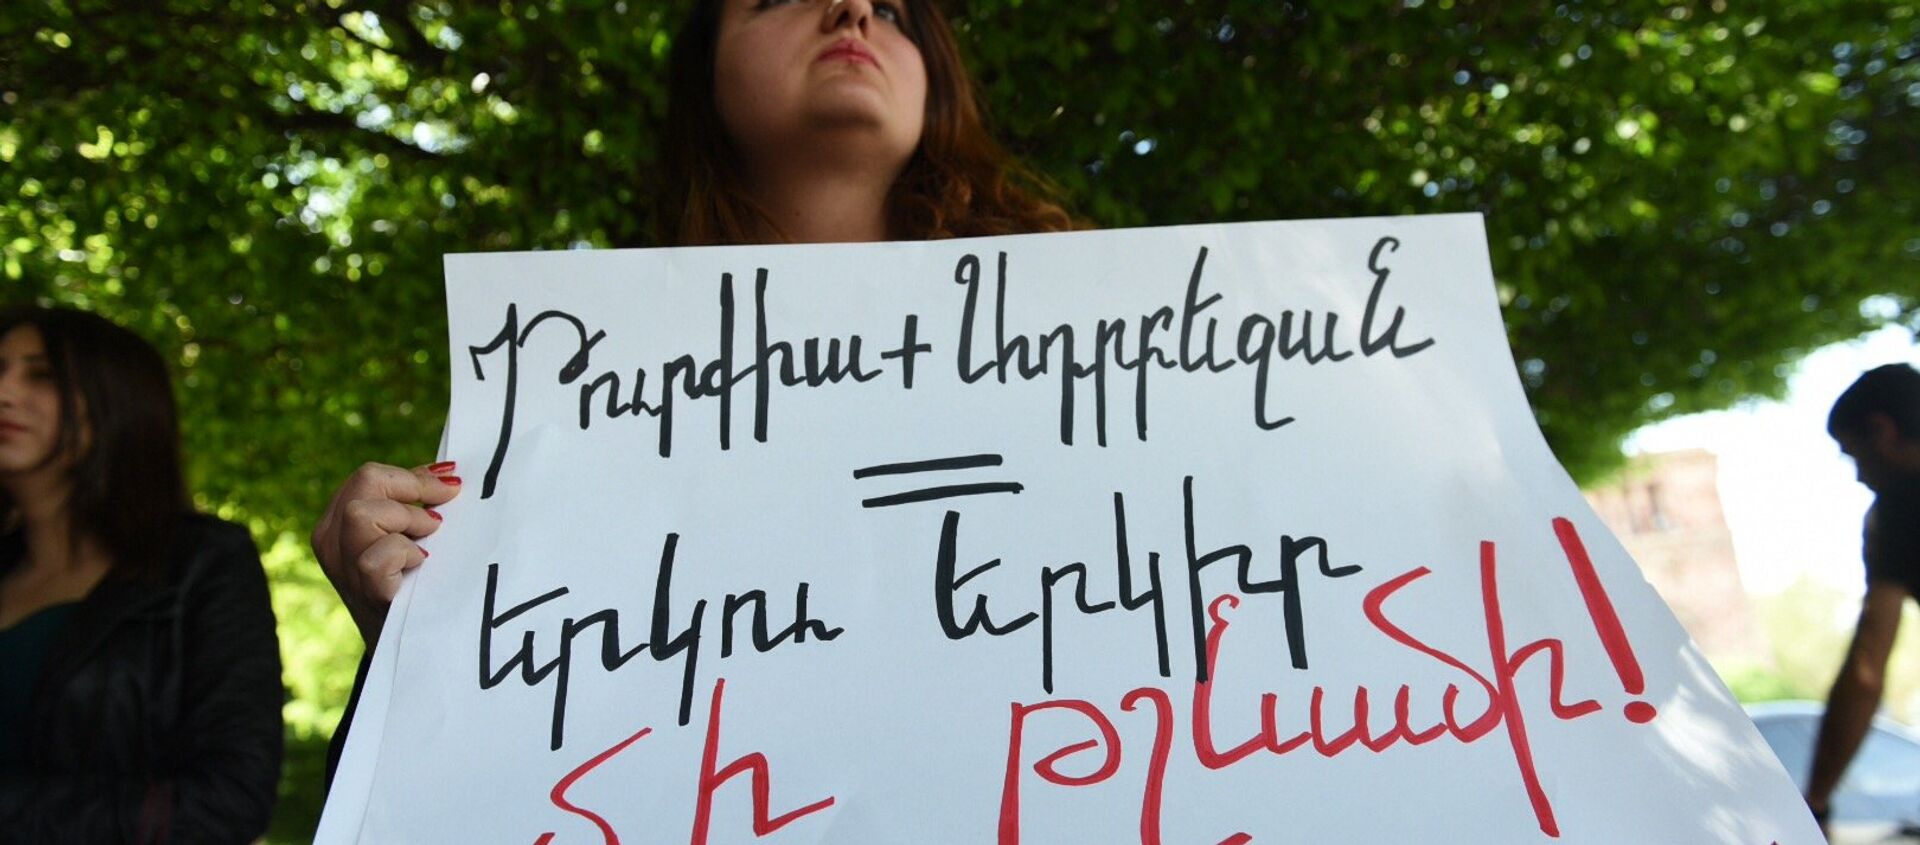 Акция протеста в Ереване против приобретения турецких товаров - Sputnik Армения, 1920, 25.12.2020